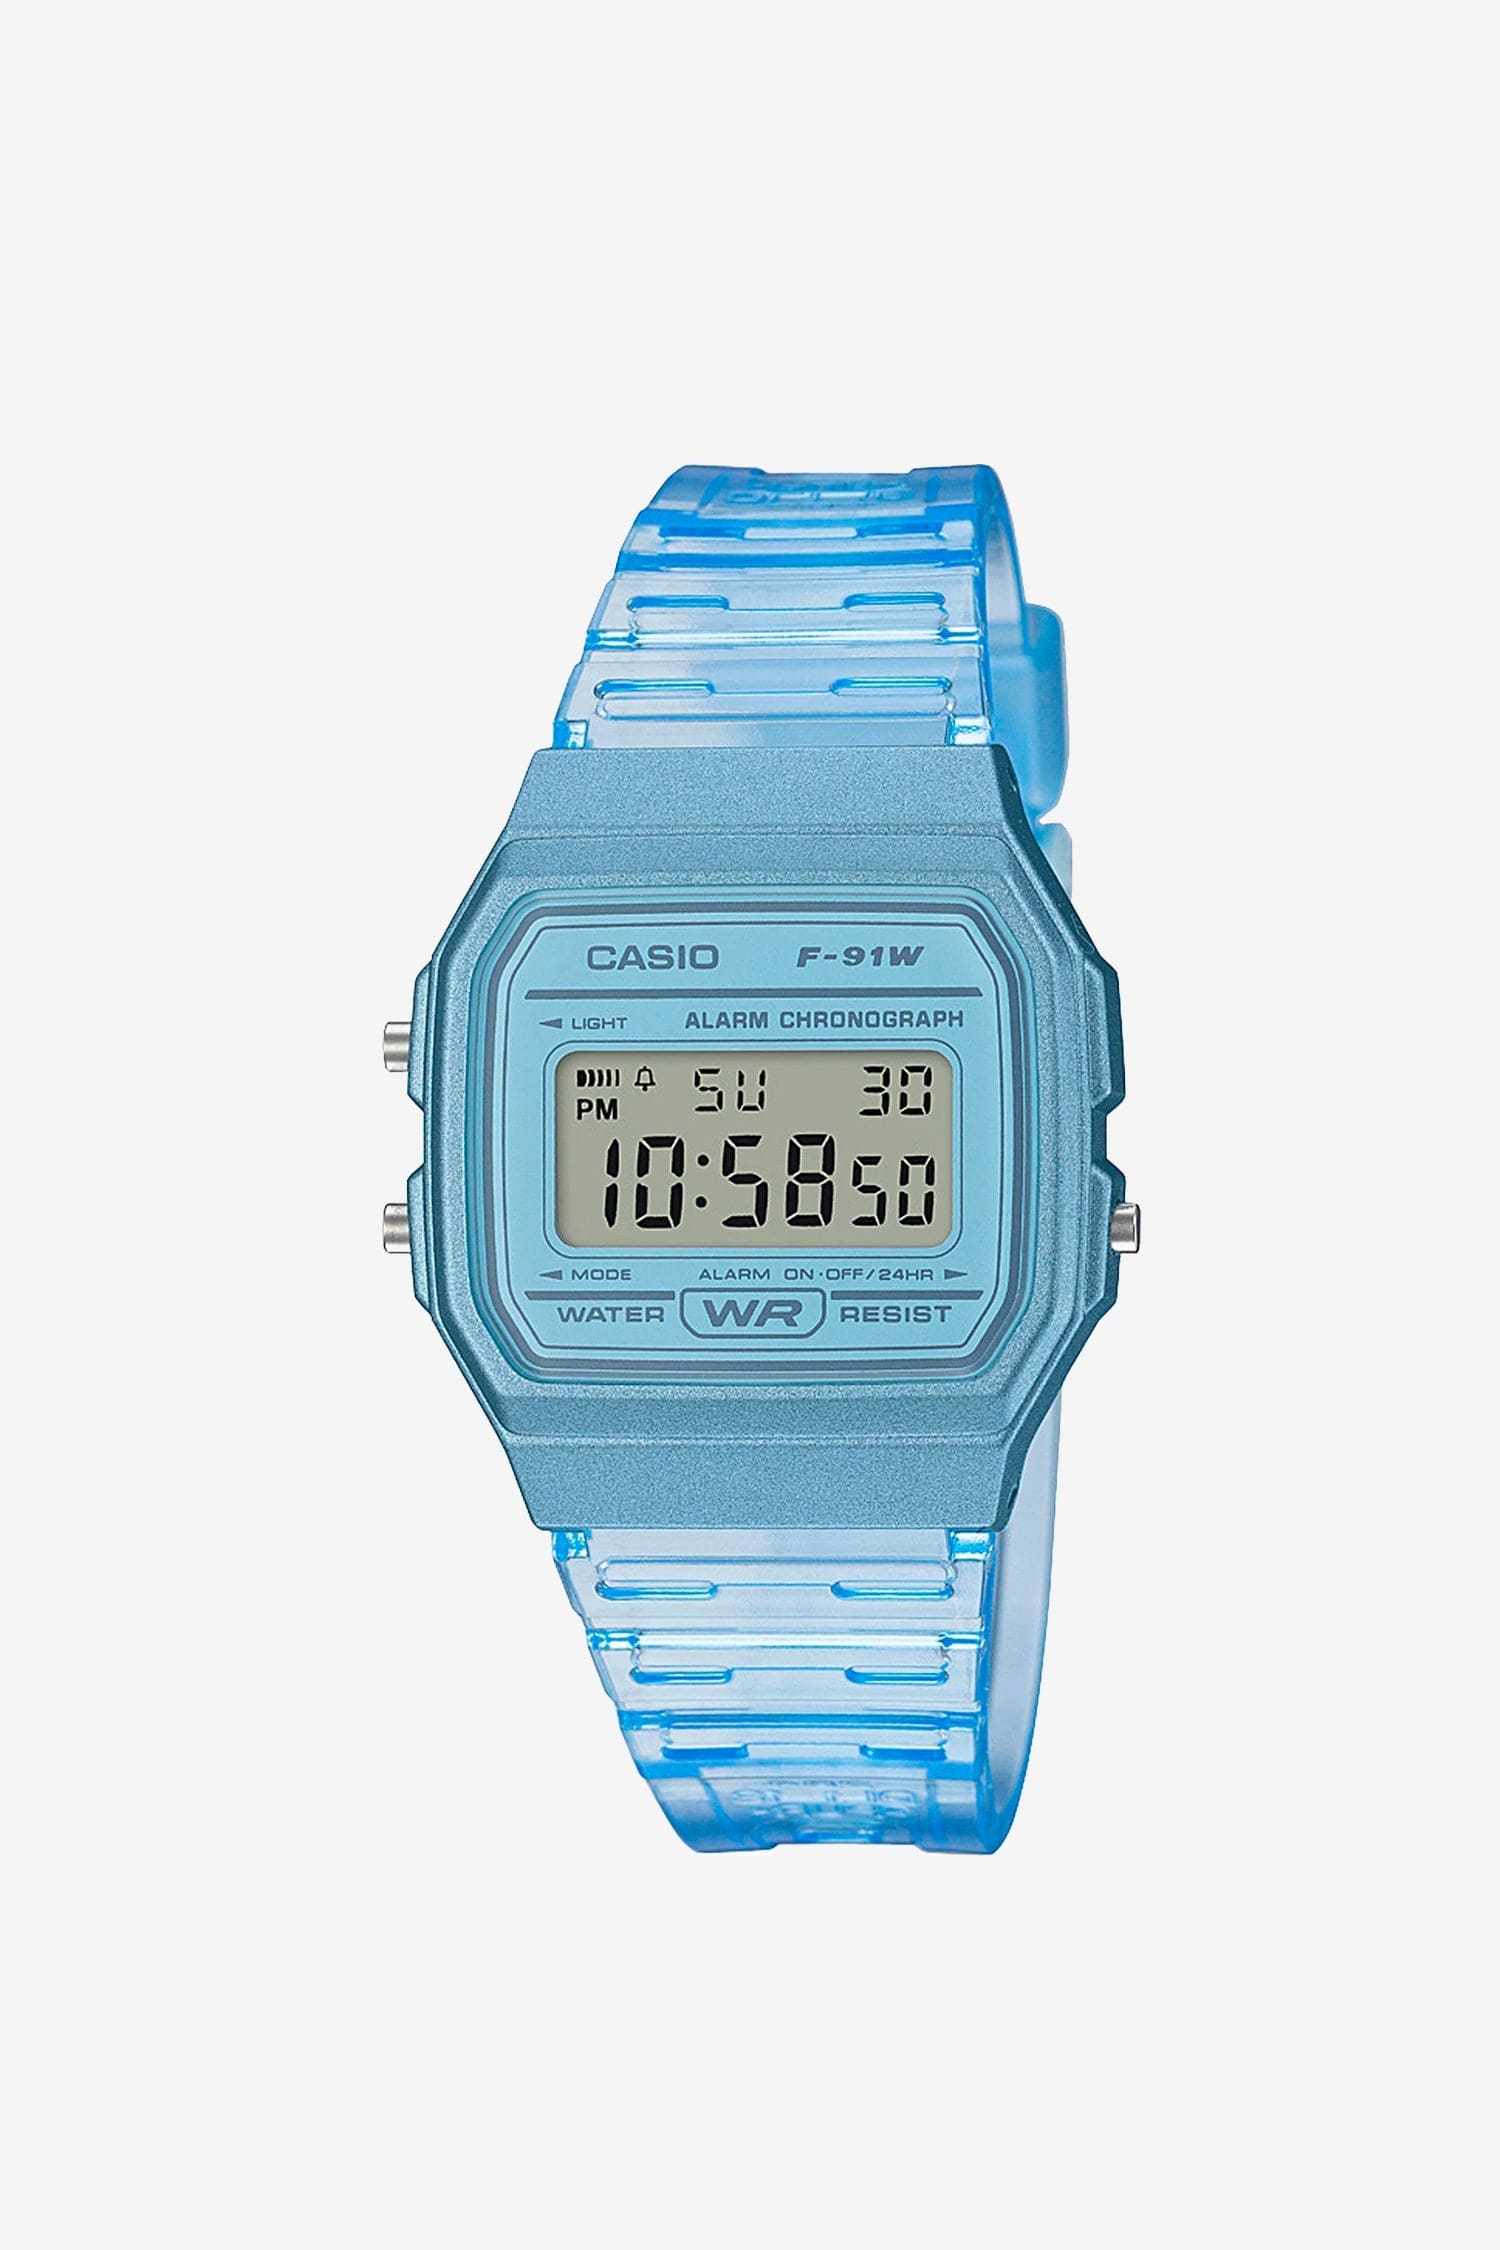 WCHD7CF -カシオユニセックスデジタルクリアジェリーストラップ腕時計